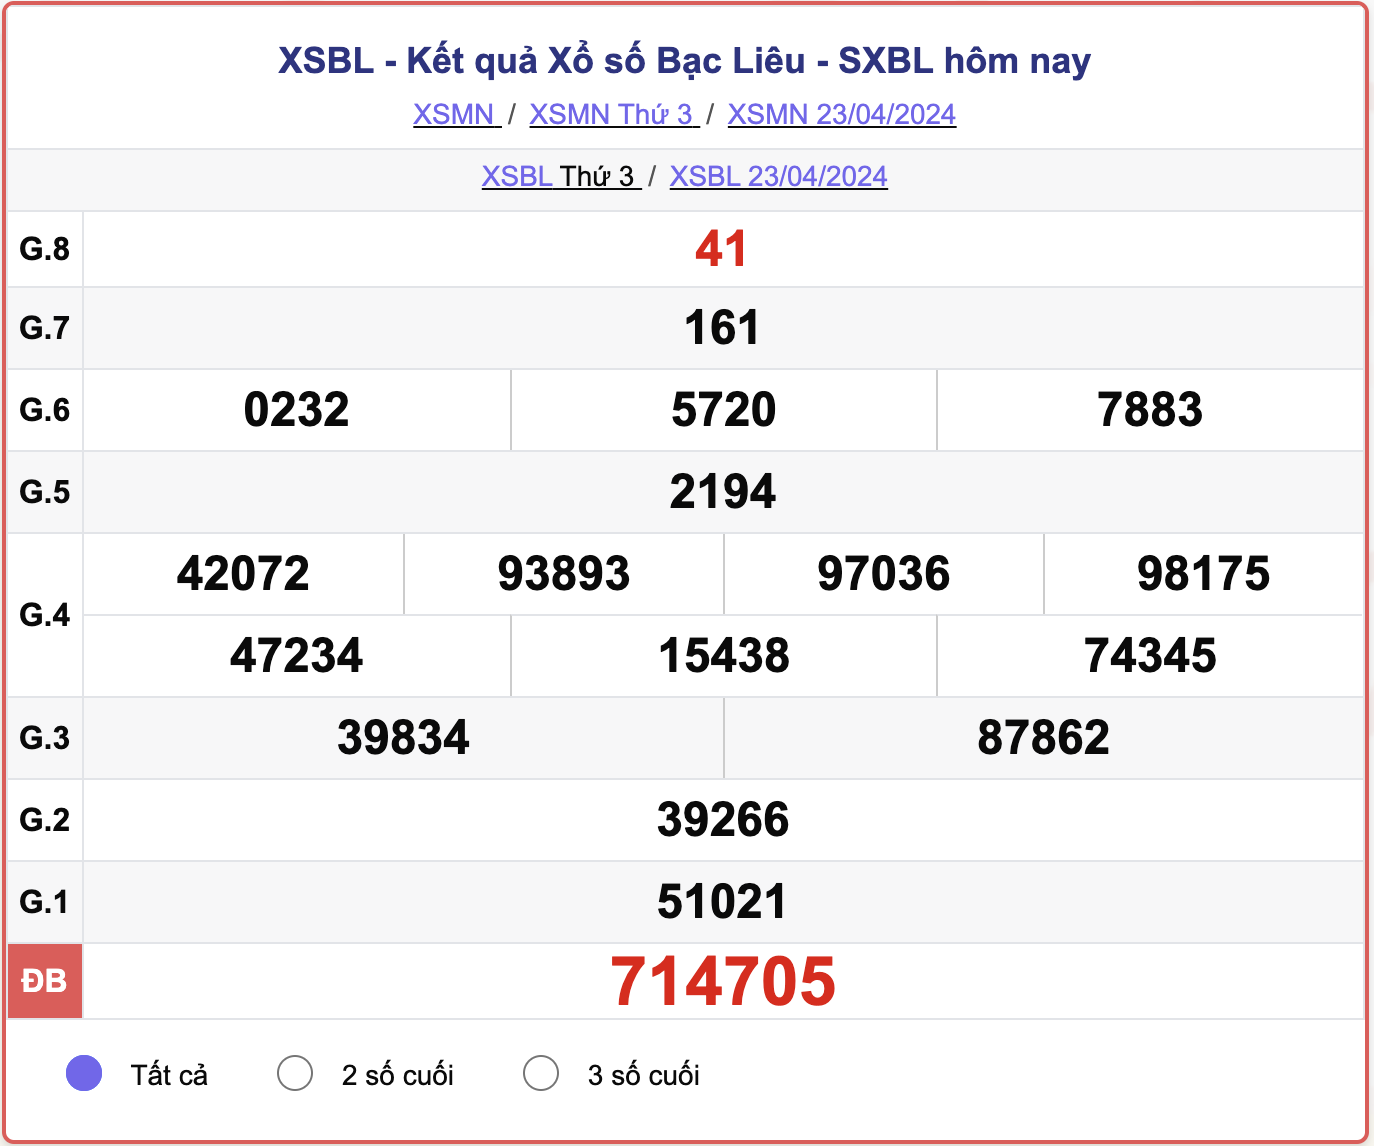 XSBL thứ 3, kết quả xổ số Bạc Liêu ngày 23/4/2024.